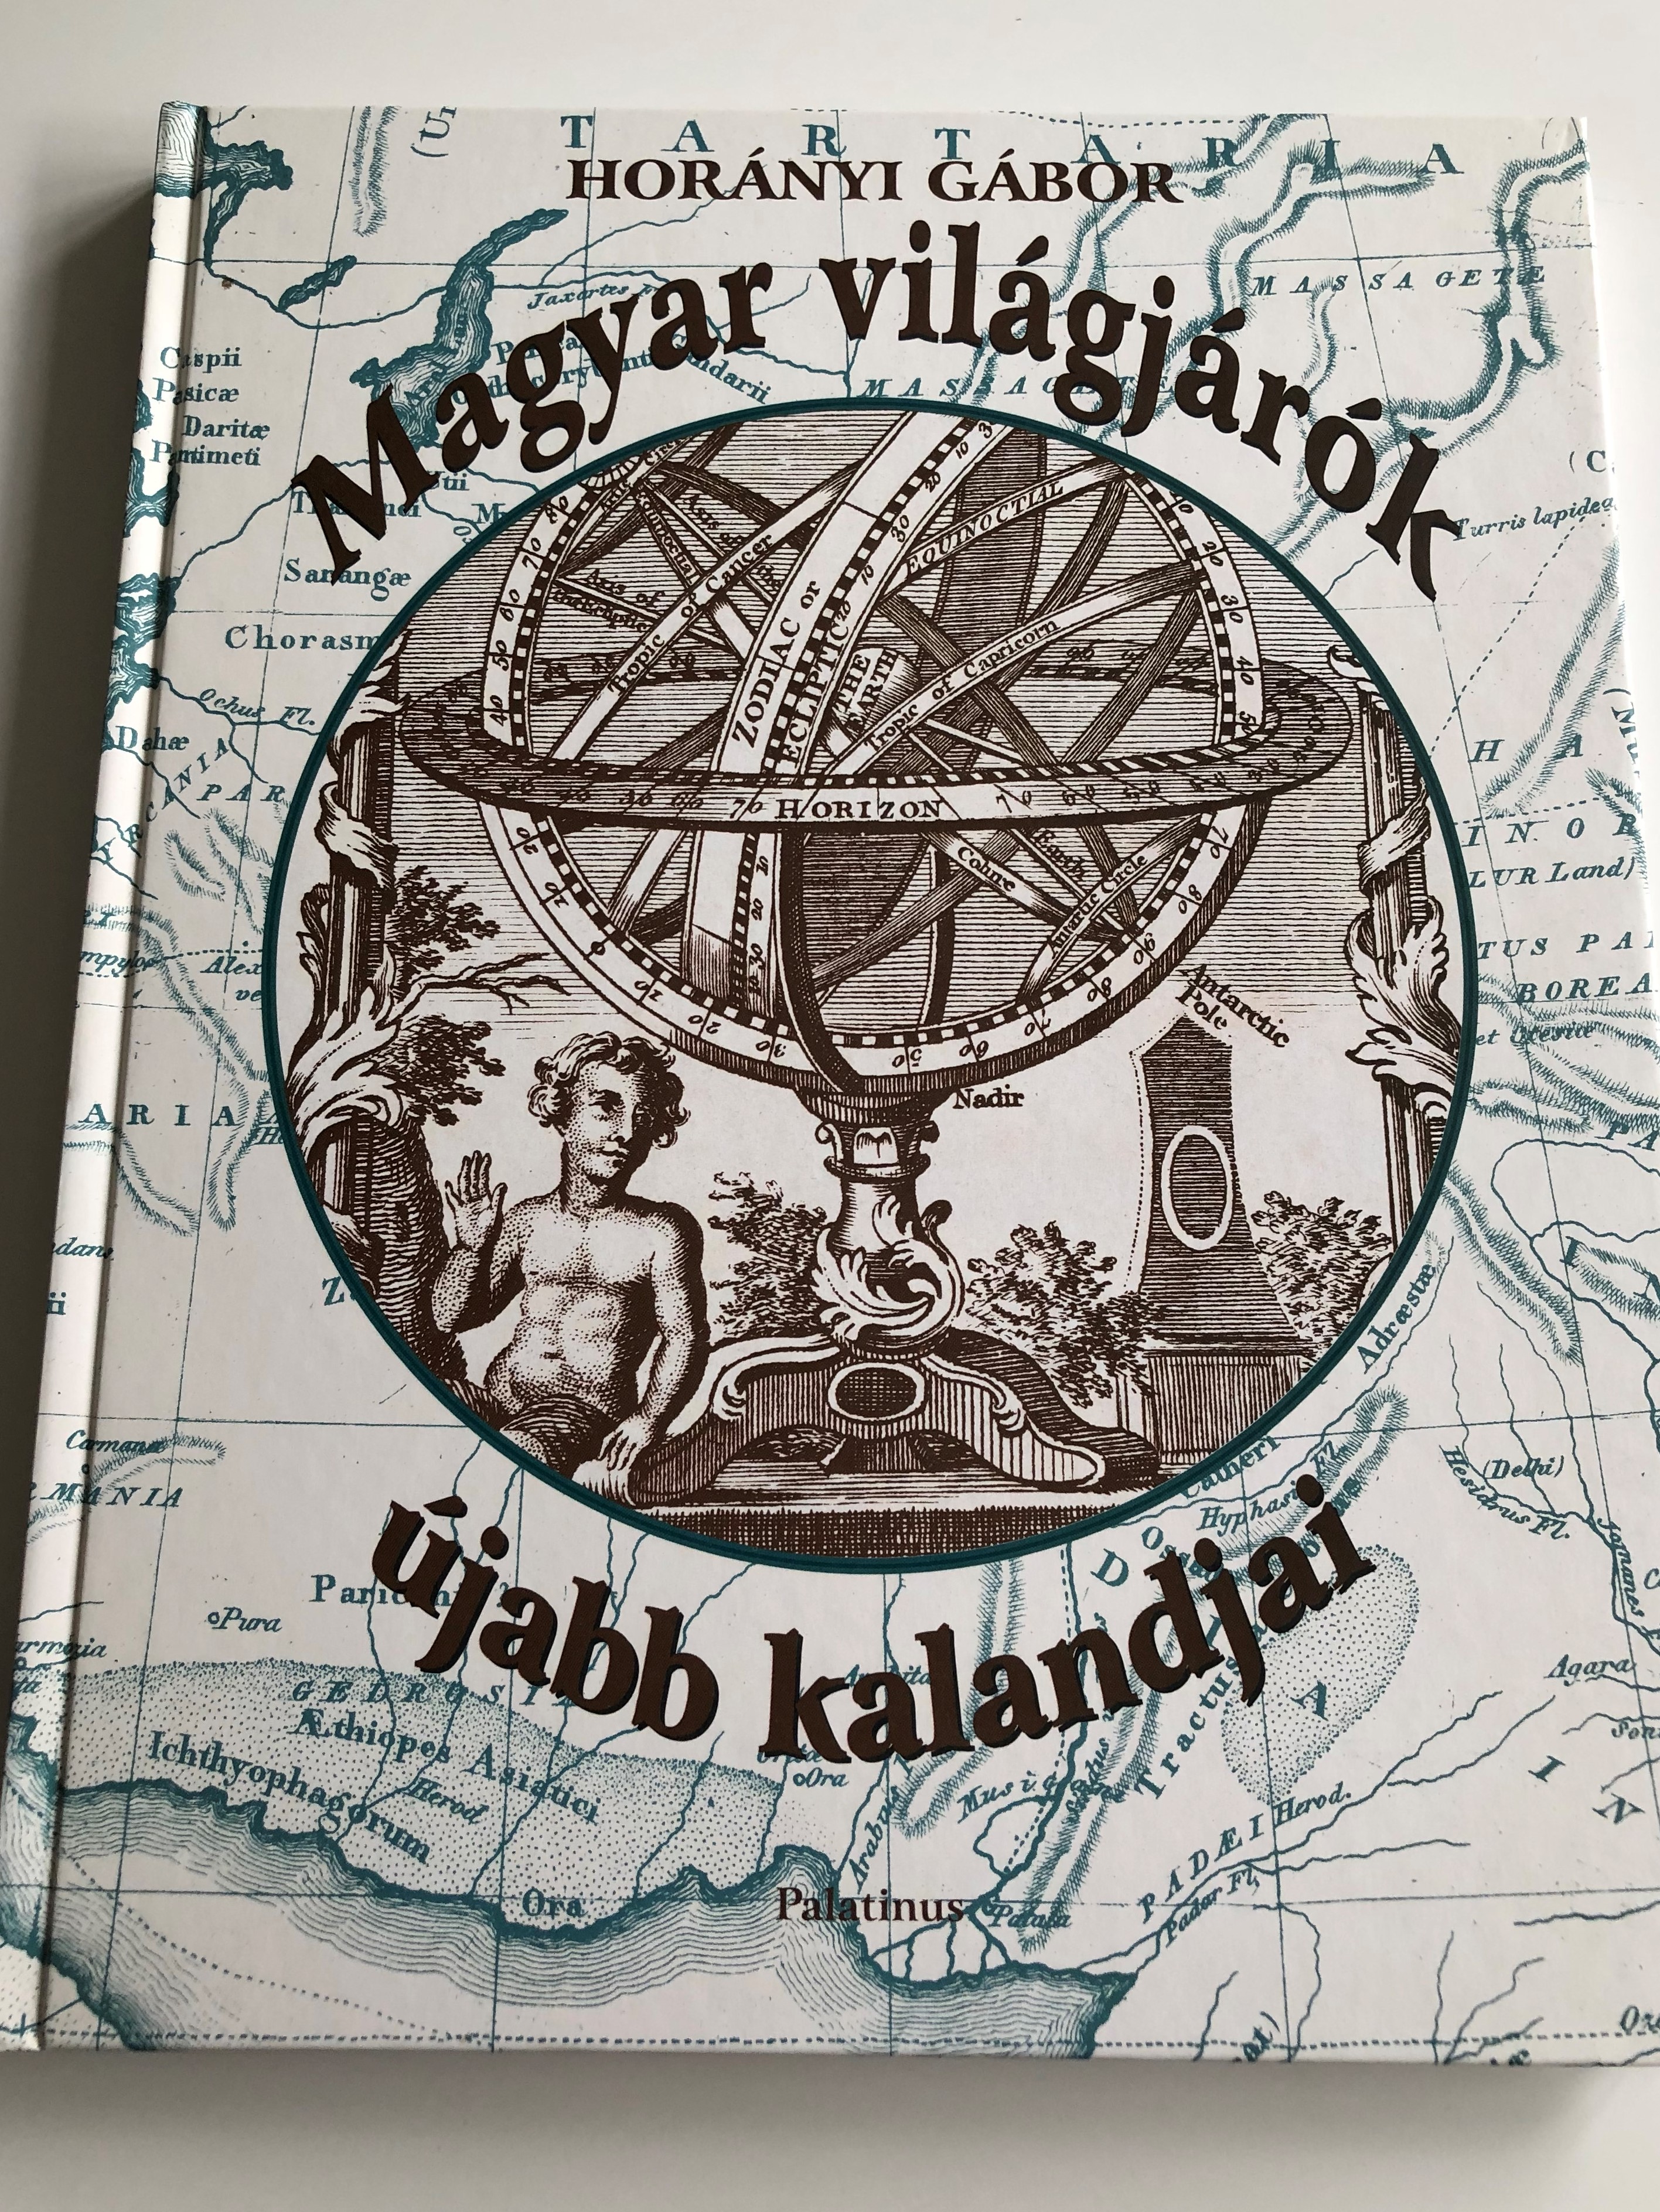 magyar-vil-gj-r-k-jabb-kalandjai-by-hor-nyi-g-bor-j-palatinus-k-nyvesh-z-hardcover-2004-hungarian-language-world-travel-guides-bal-zs-ferenc-festetics-rudolf-jank-j-nos-jord-n-k-roly-budai-parmenius-istv-n-1-.jpg